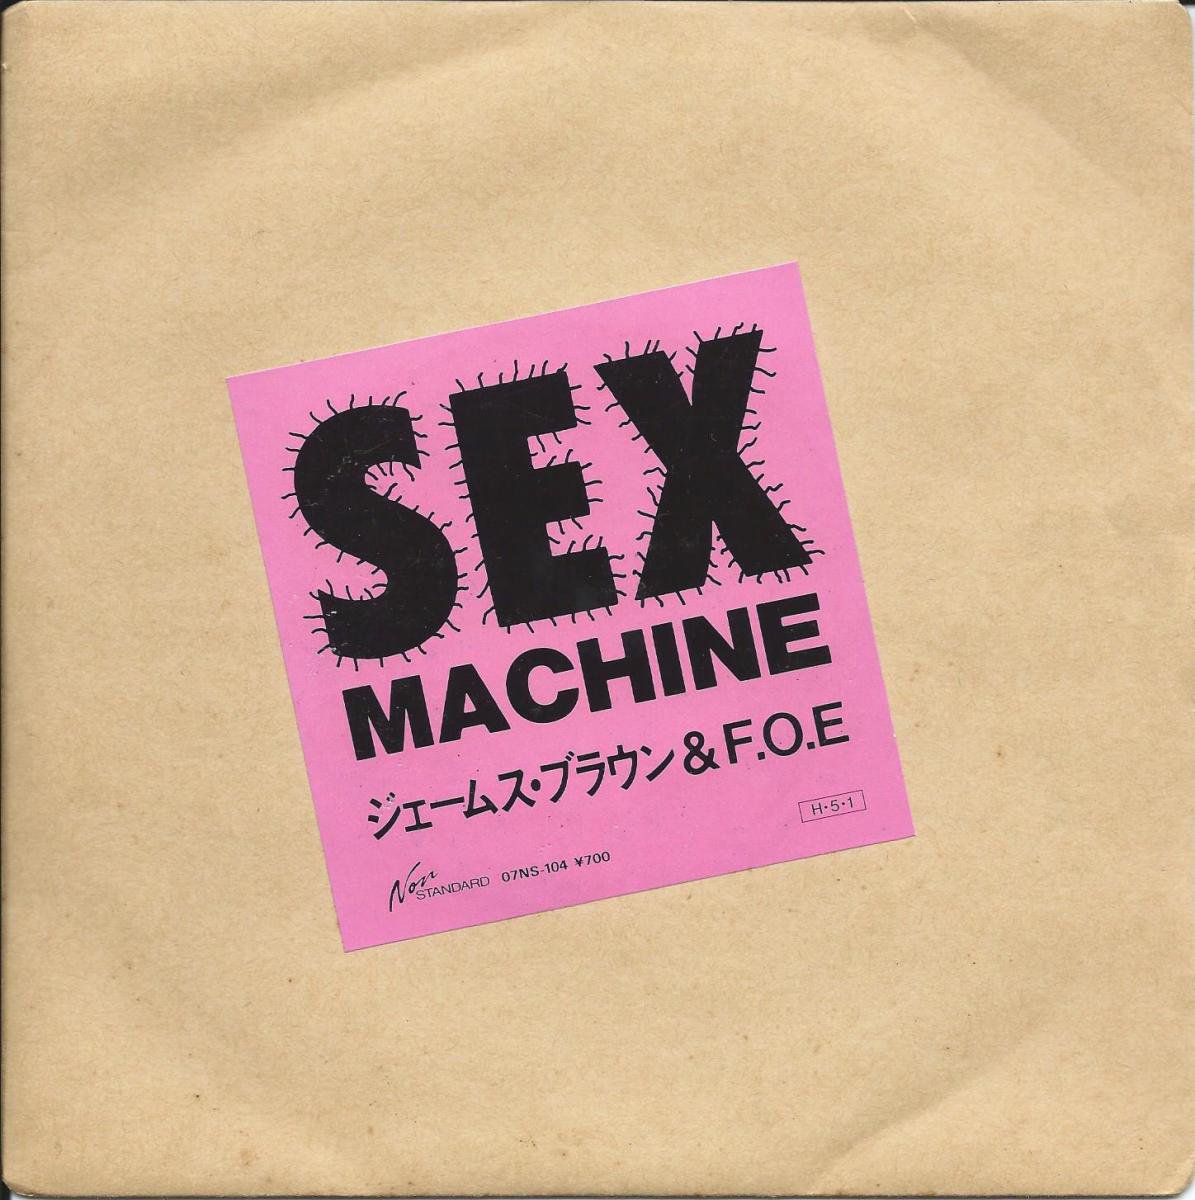 ジェームス ブラウン F O E セックス マシーン Sex Machine Prod By 細野晴臣 7 Hip Tank Records